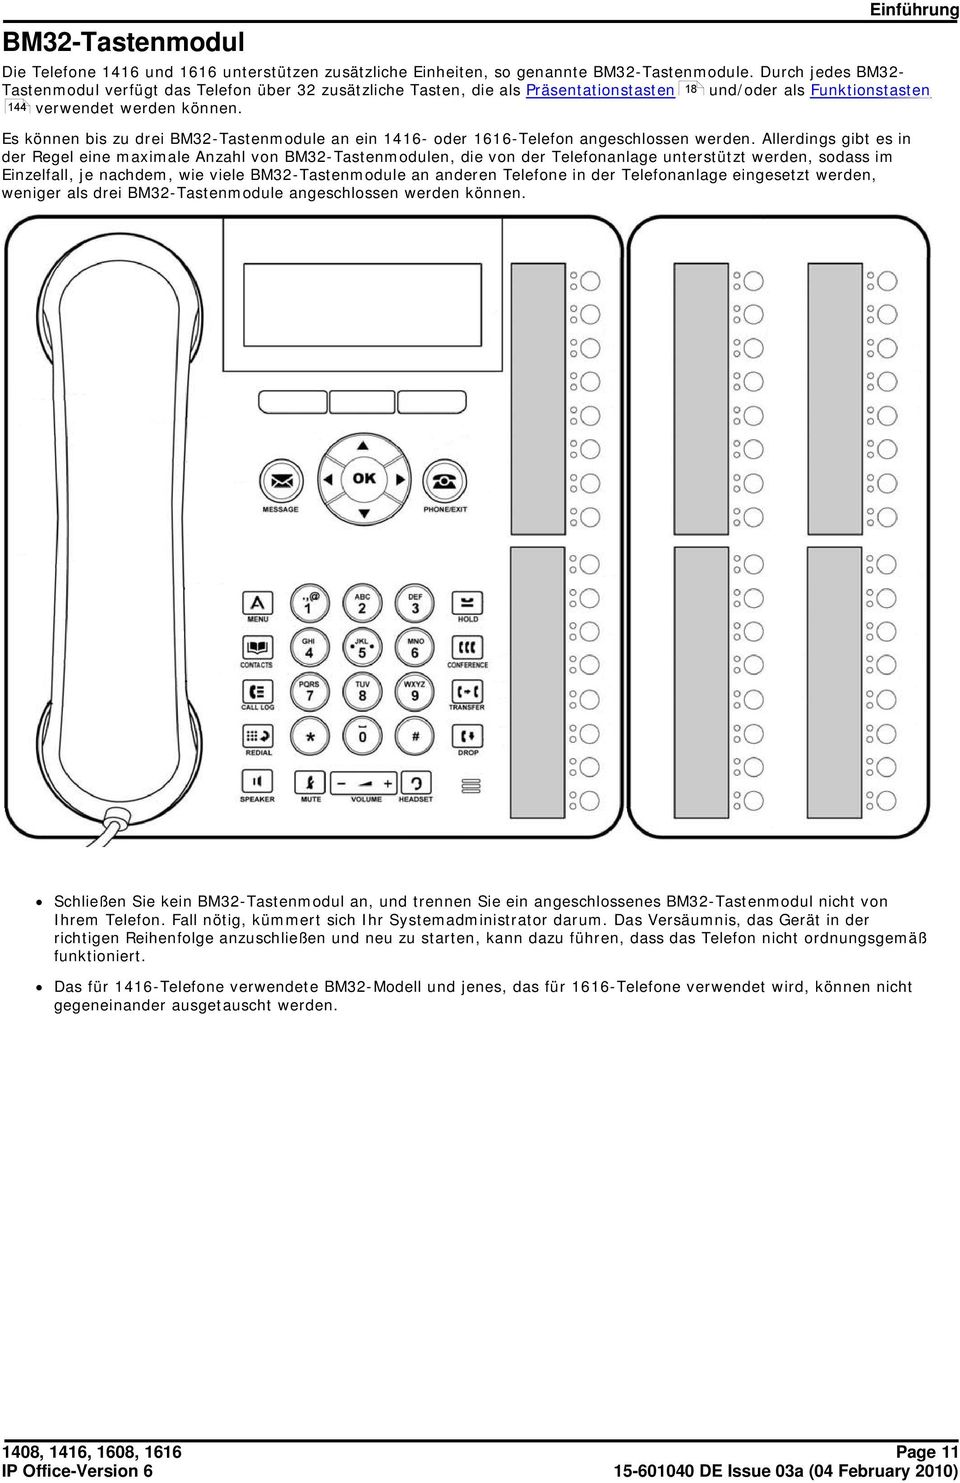 Es können bis zu drei BM32-Tastenmodule an ein 1416- oder 1616-Telefon angeschlossen werden.